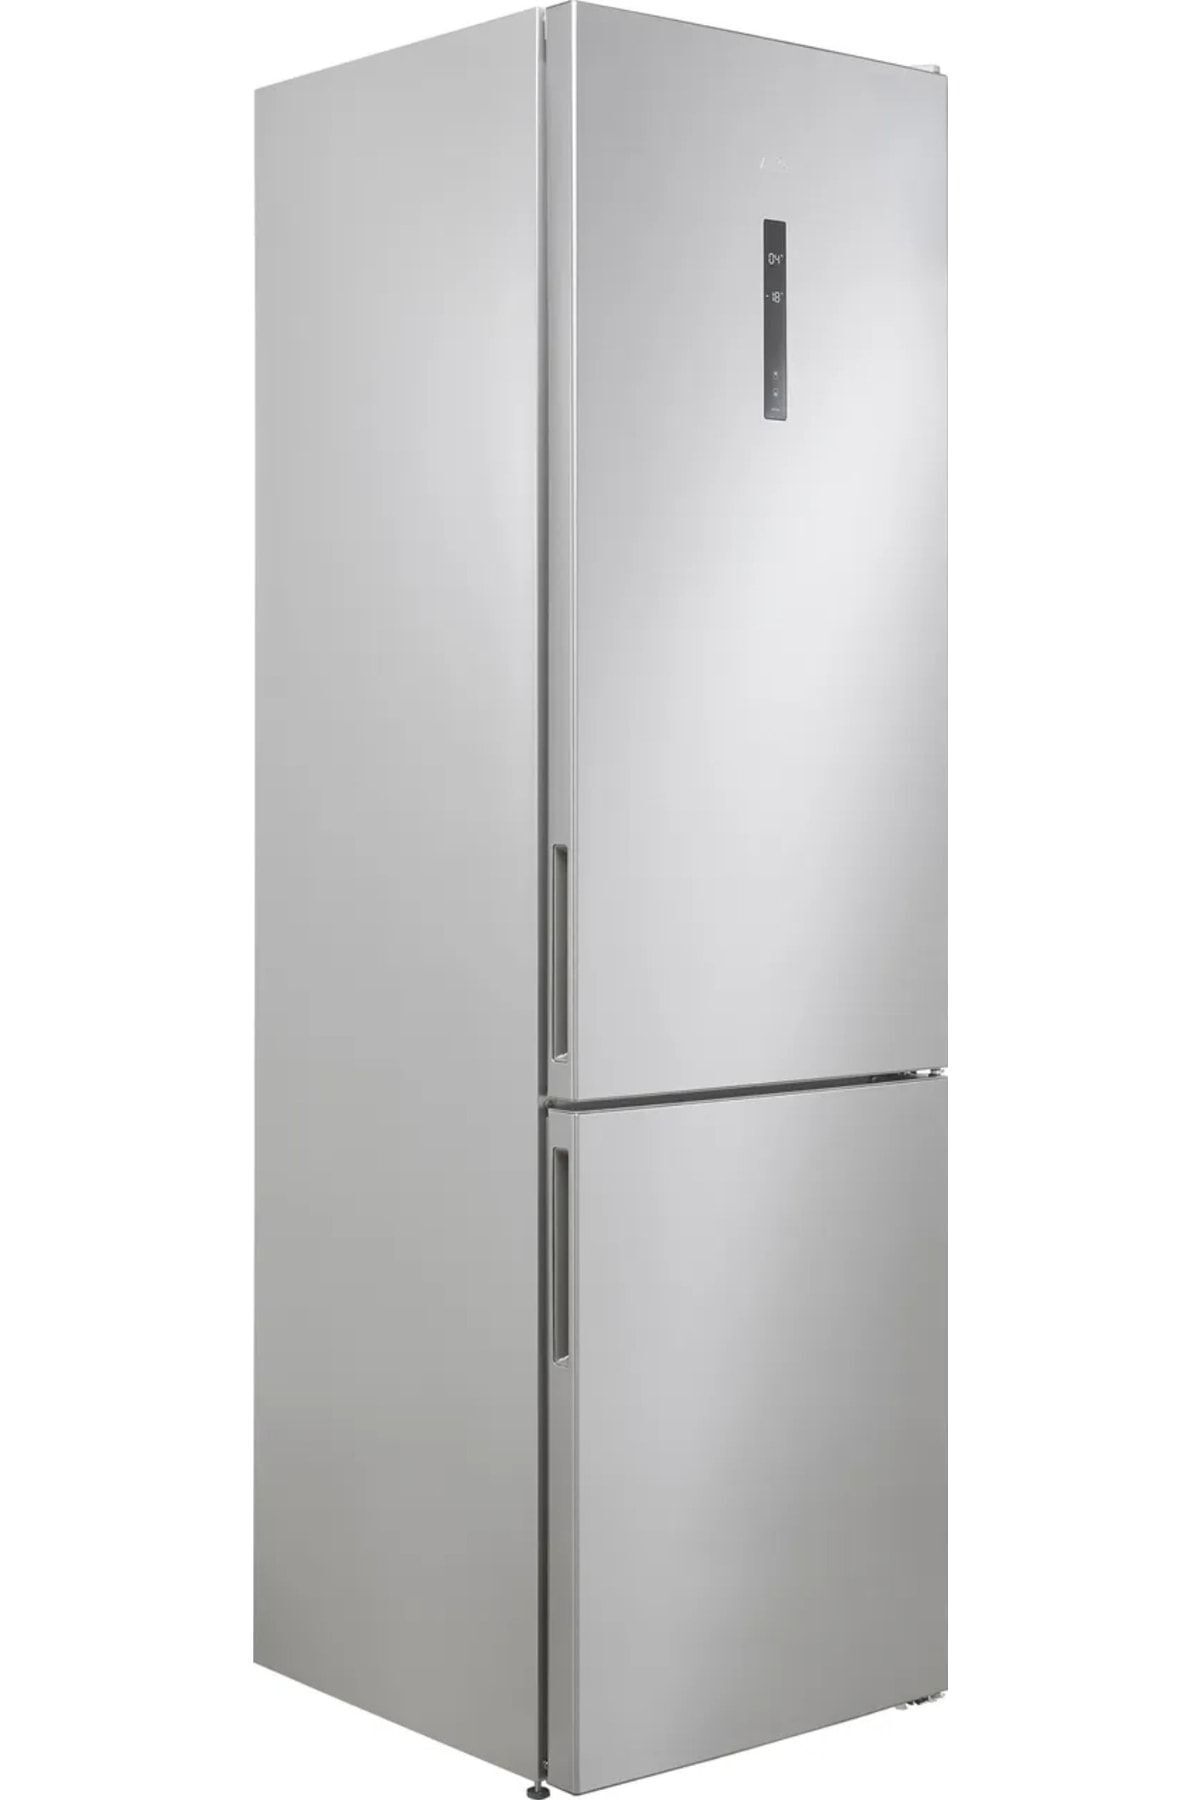 VESTEL 401lt / 2metre Ekstra Uzun Inox No-frost Buzdolabı